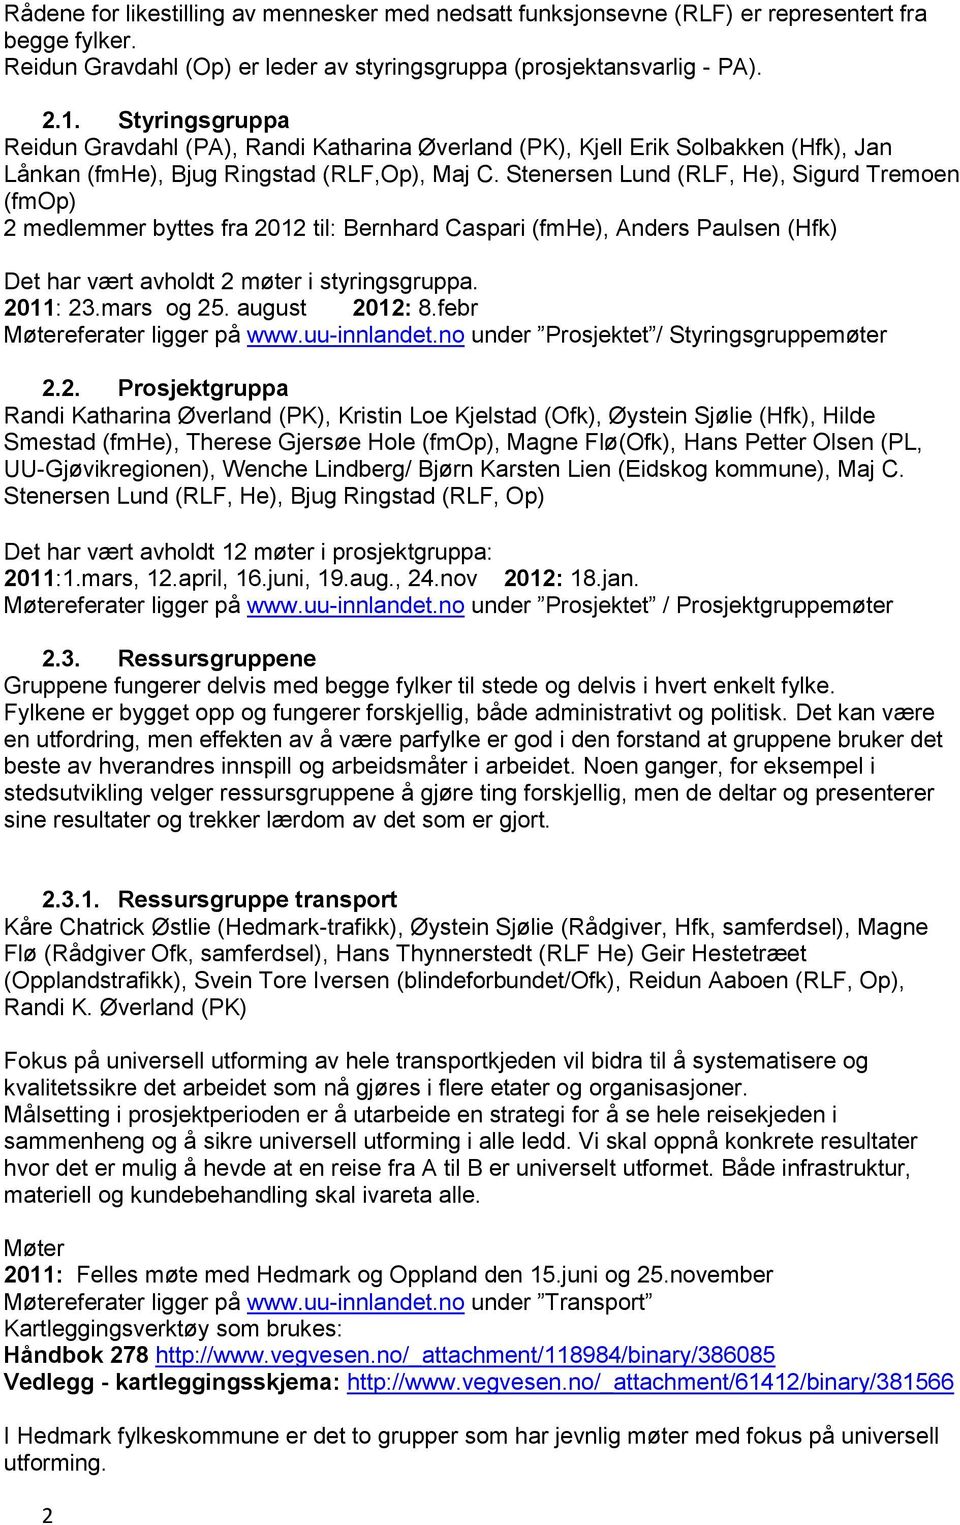 Stenersen Lund (RLF, He), Sigurd Tremoen (fmop) 2 medlemmer byttes fra 2012 til: Bernhard Caspari (fmhe), Anders Paulsen (Hfk) Det har vært avholdt 2 møter i styringsgruppa. 2011: 23.mars og 25.